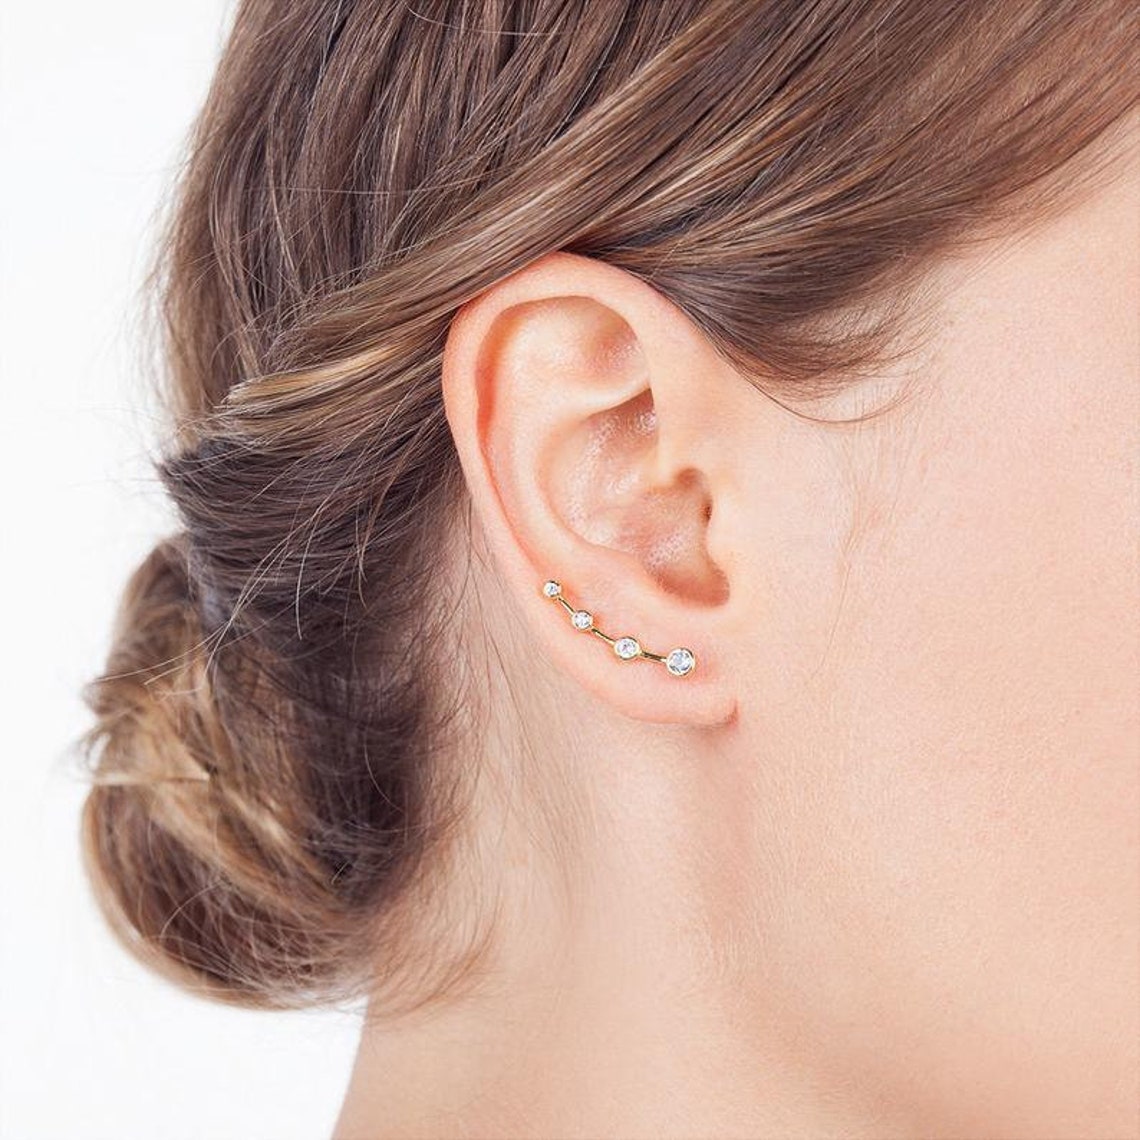 Ear Climber Ear Crawlers Earrings Gold Earrings 925 | Etsy